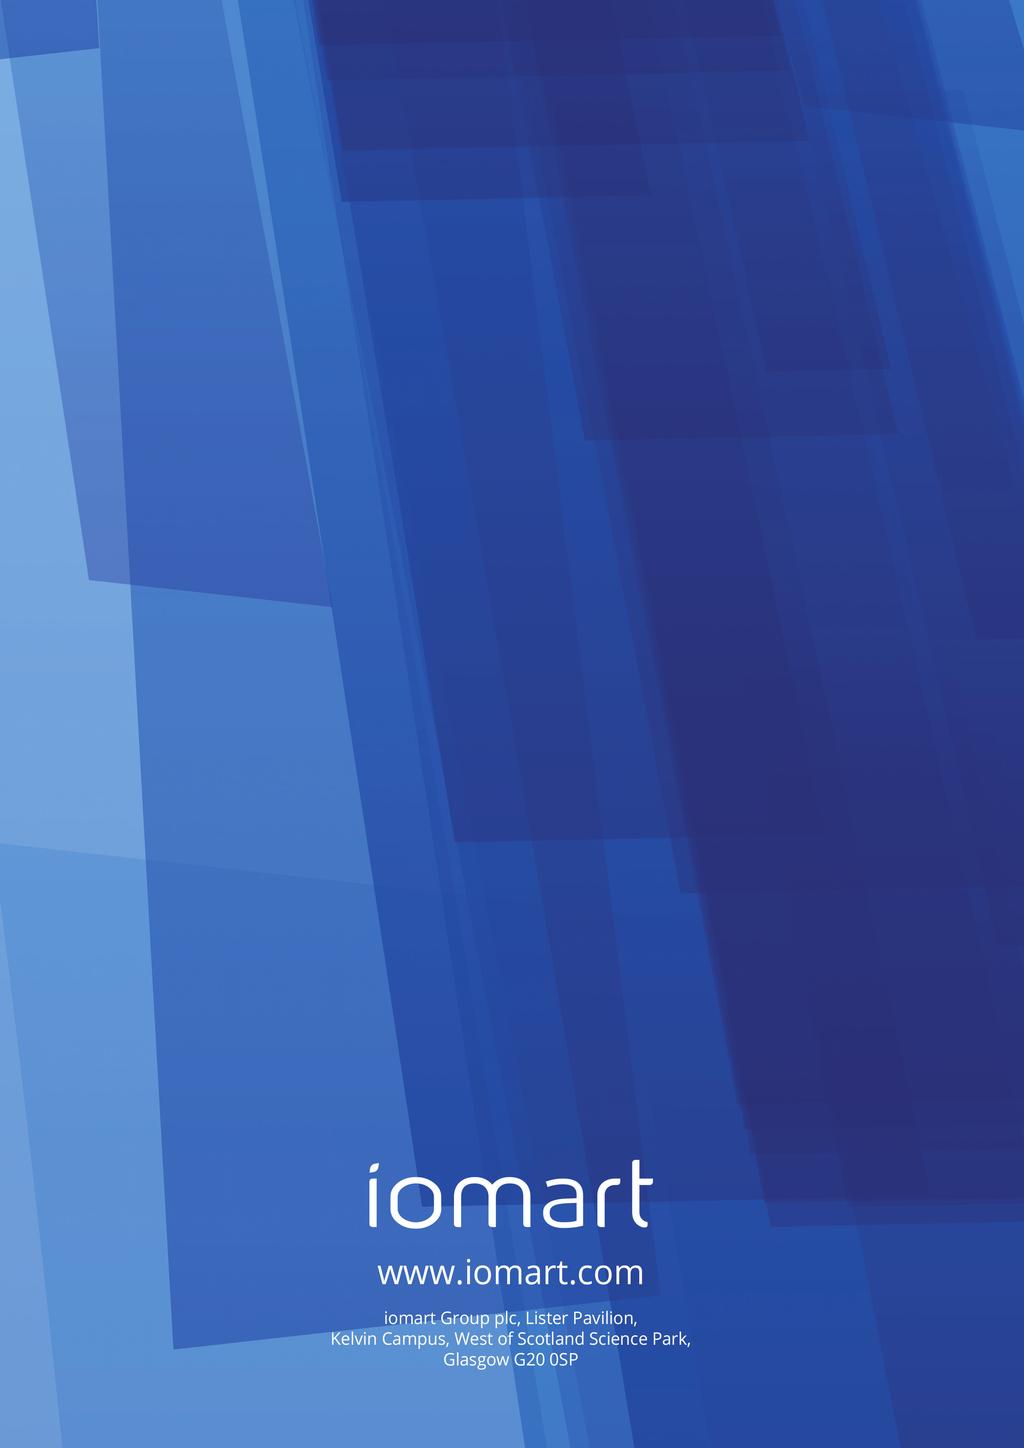 www.iomart.